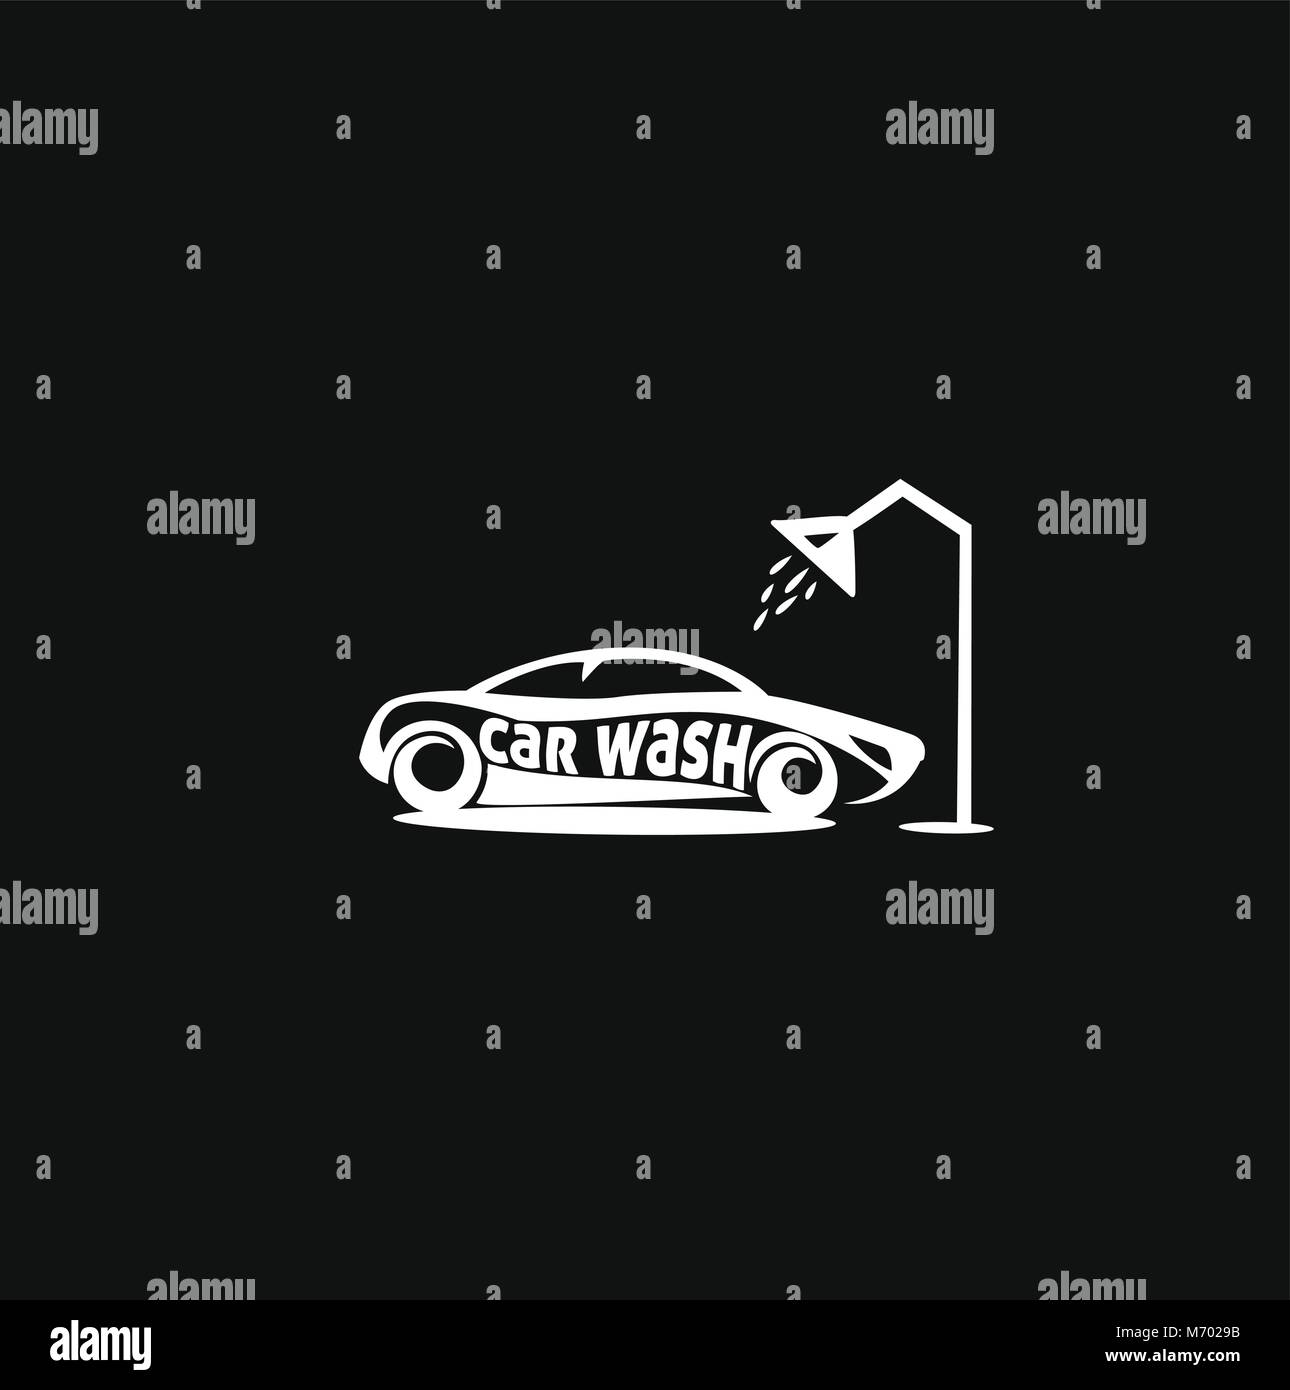 Minimale Logo der weißen Auto waschen auf schwarzem Hintergrund Vektor illutration Stock Vektor